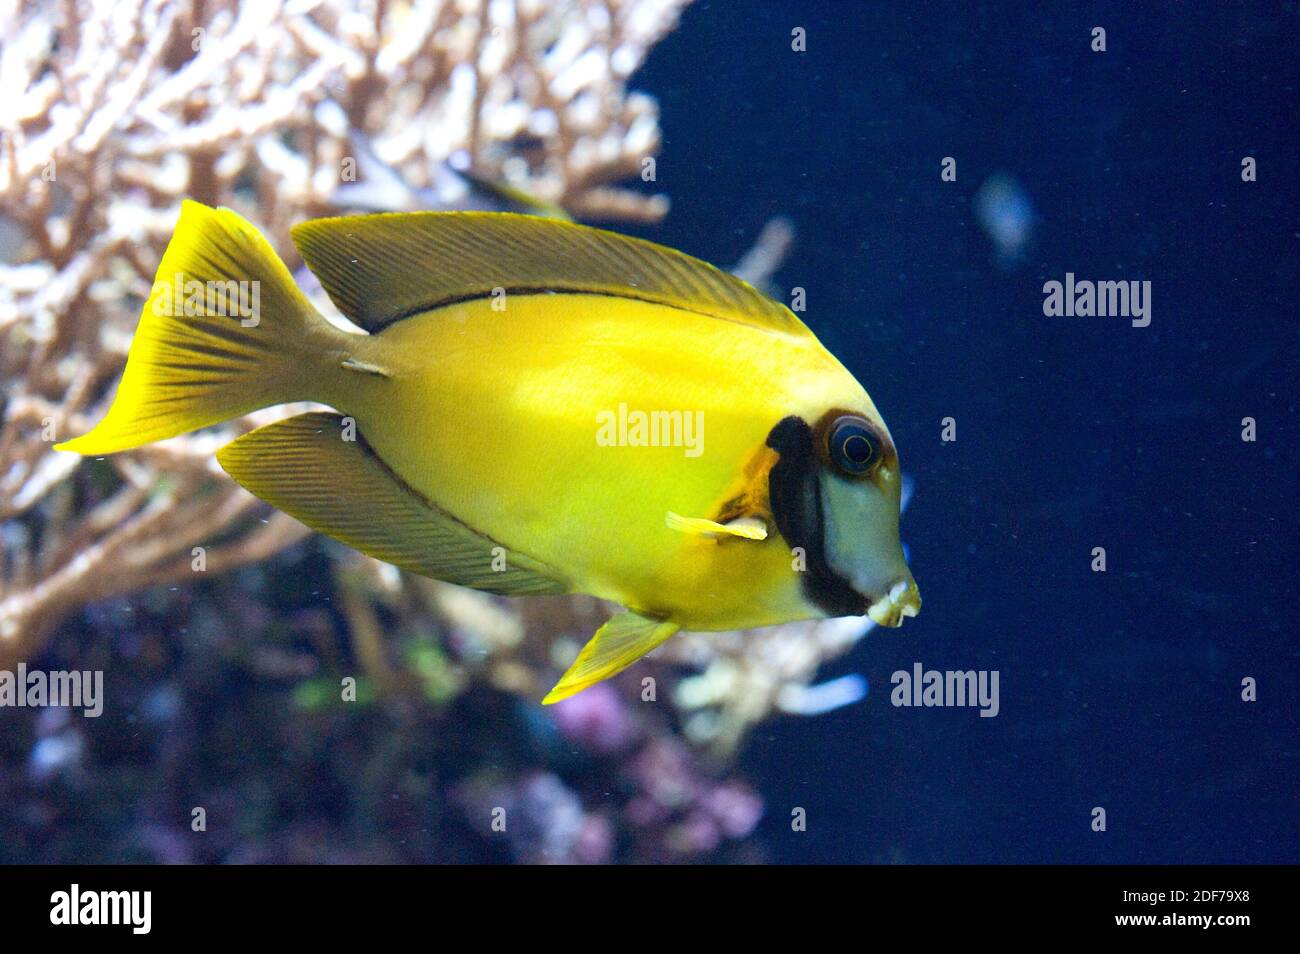 El pez surgeonfish (Acanthurus pyroferus) es un pez marino tropical nativo del Océano Indo-Pacífico. Foto de stock